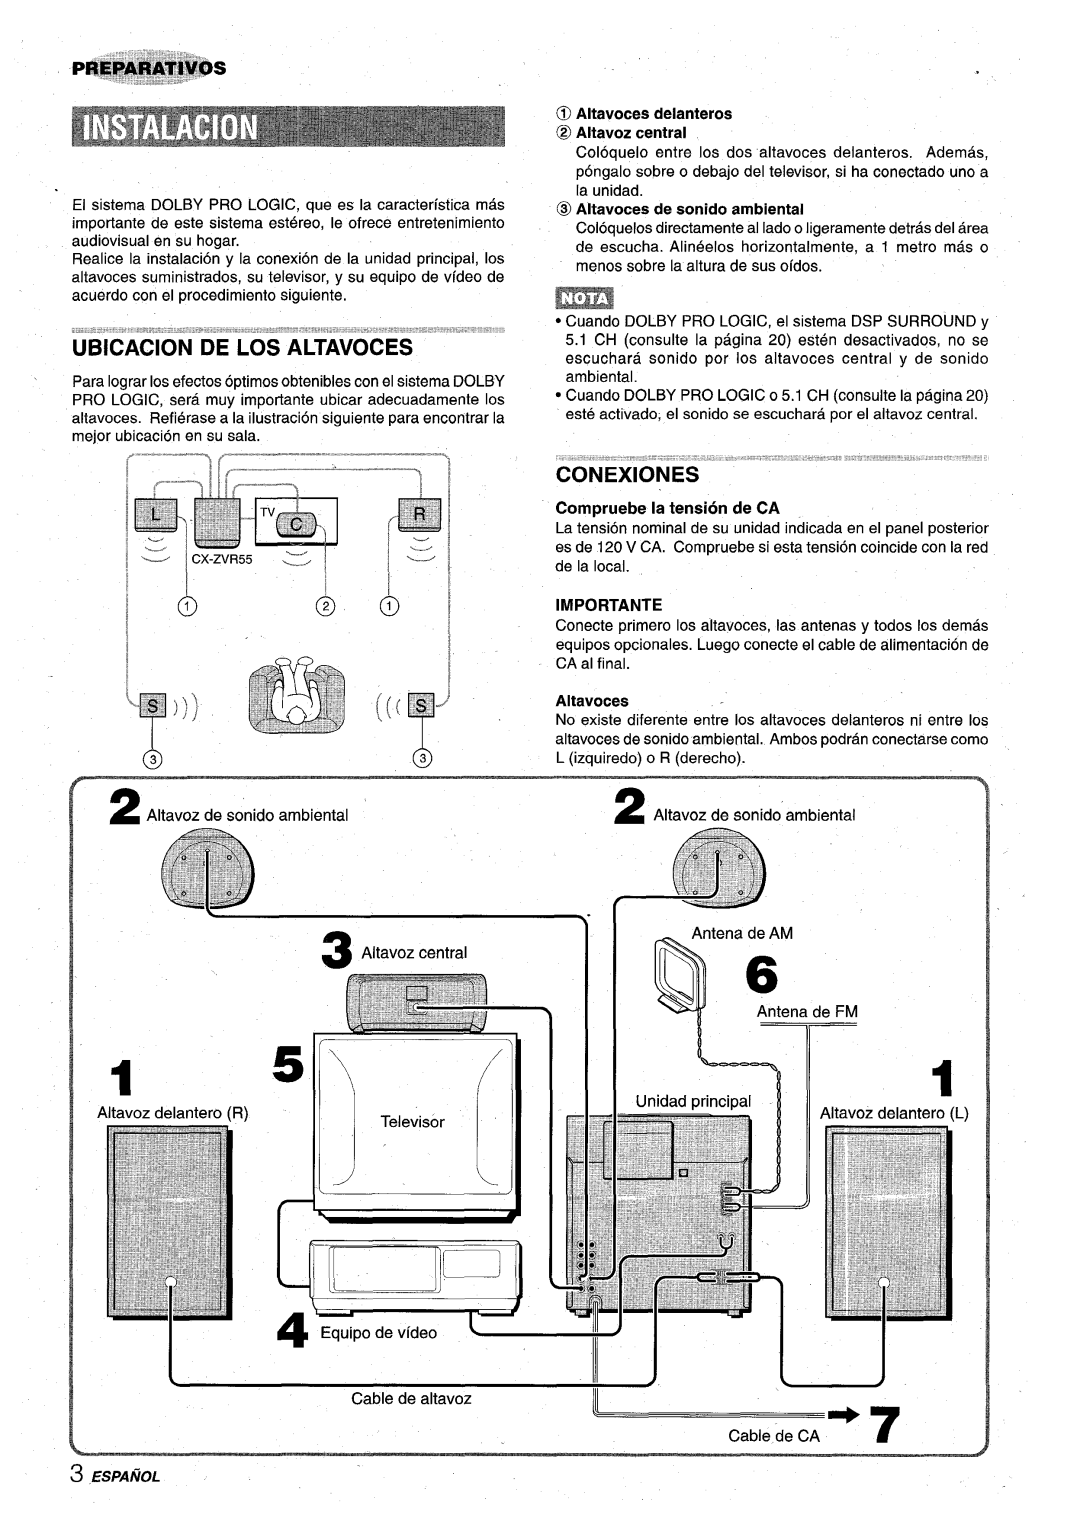 Aiwa Z-VR55 manual Ill J, Ubicacion De Los Altavoces, Conexiones, t,. .,., ,,.-,,,,..,..... ..=- ~,h,,*.,, ,”= 